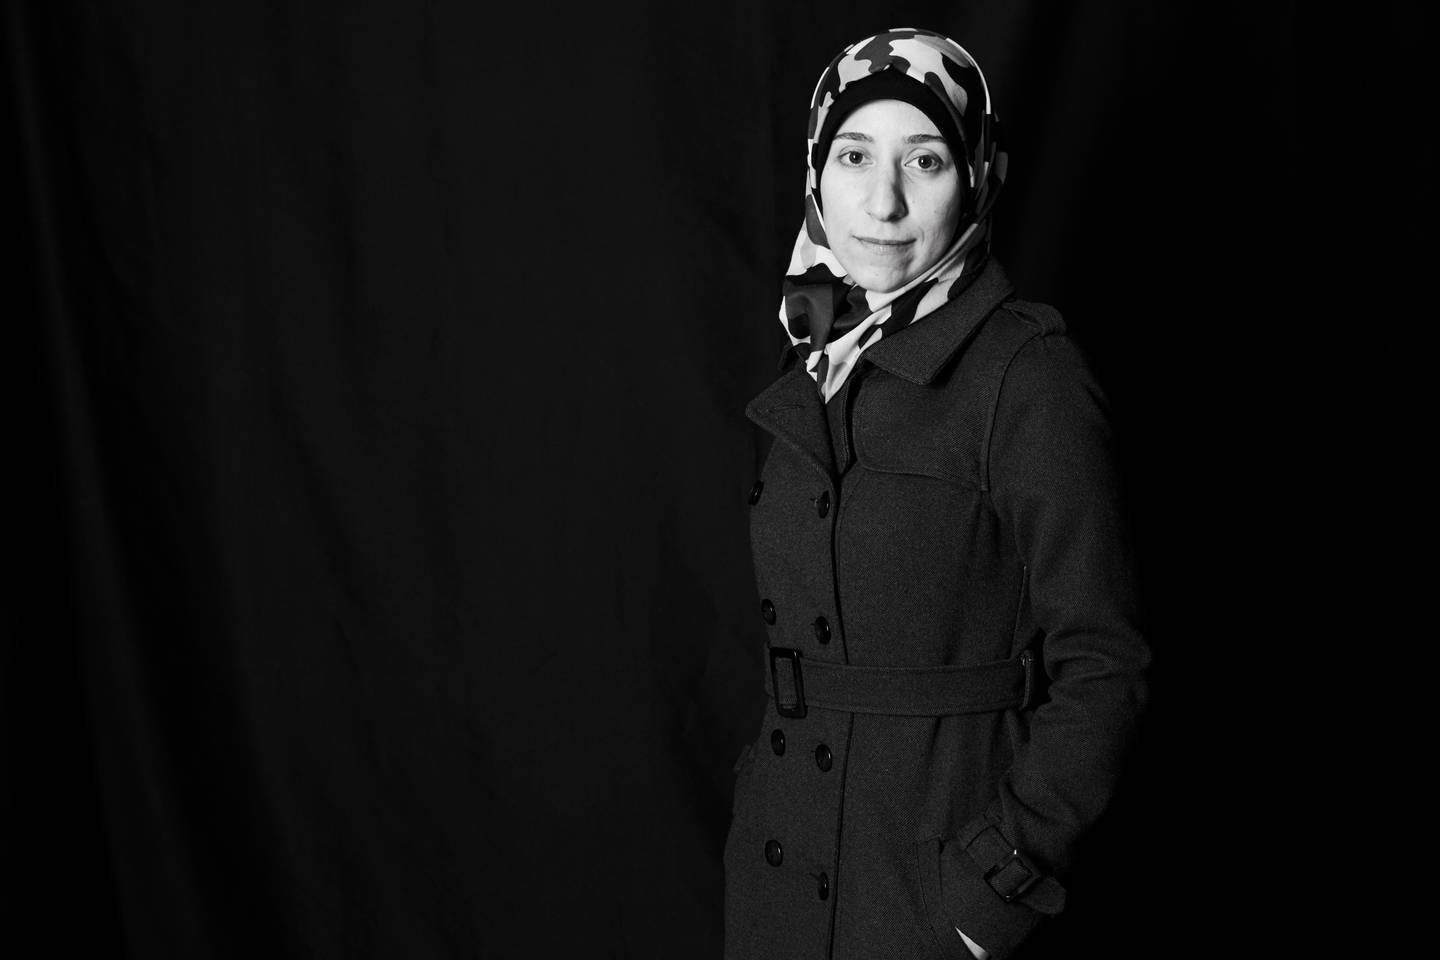 Amani Ballour har blitt tildelt Raoul Wallenberg-prisen for sin innsats i borgerkrigsherjede Syria: «Hun er et lysende eksempel på empati, verdighet og ære som kan blomstre selv under de verste omstendigheter». Filmen om henne er nominert til Oscar.